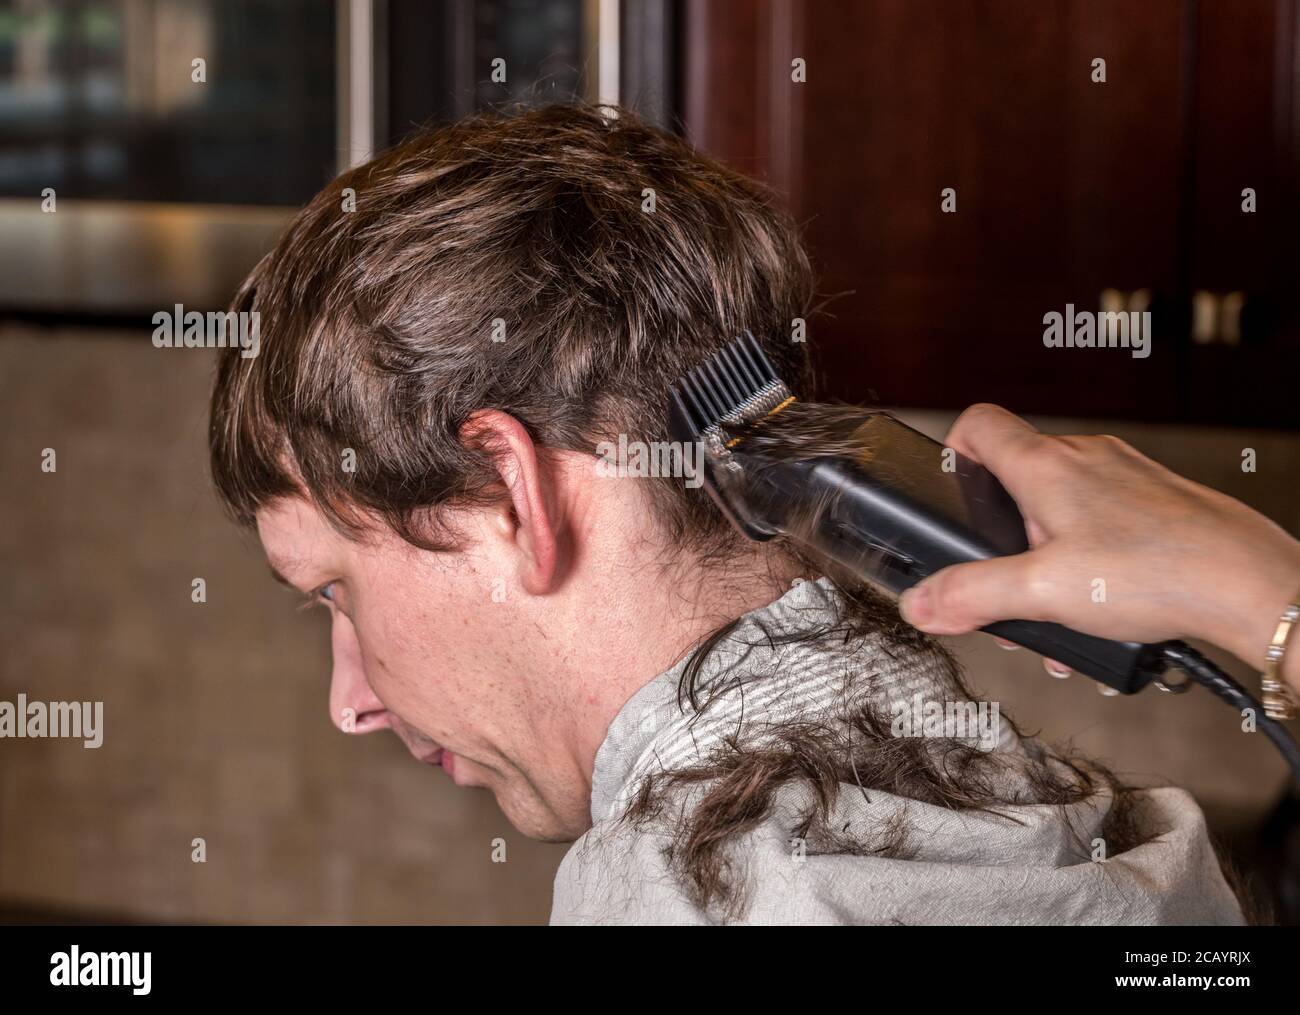 Gros plan de l'homme caucasien ayant ses cheveux coupés à la maison pendant la quarantaine pour le coronavirus. Utilisation de la tondeuse électrique Banque D'Images